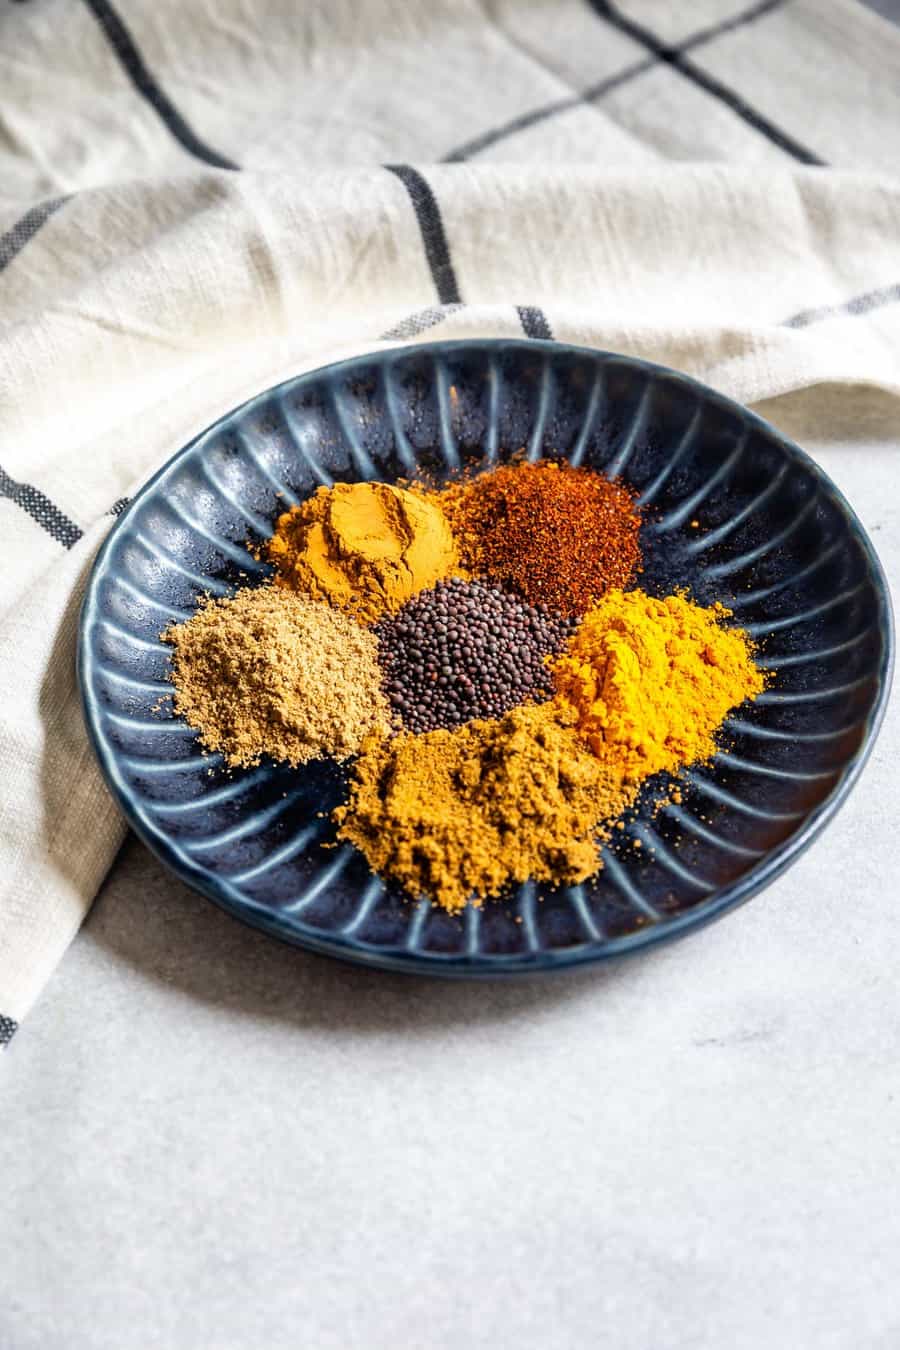 Homemade Curry Powder Recipe - EASY GOOD IDEAS